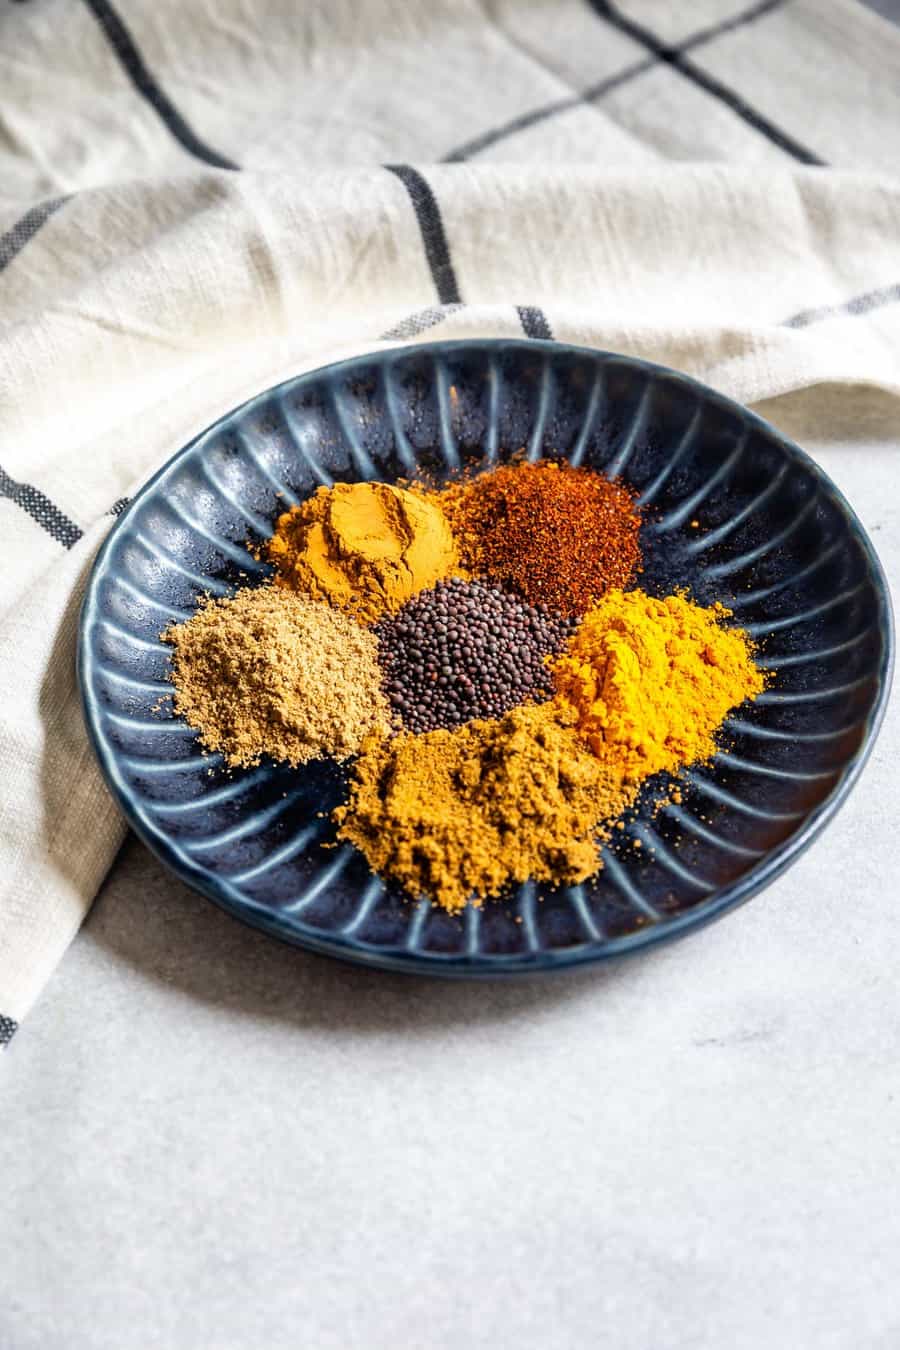 Homemade Curry Powder Recipe - EASY GOOD IDEAS